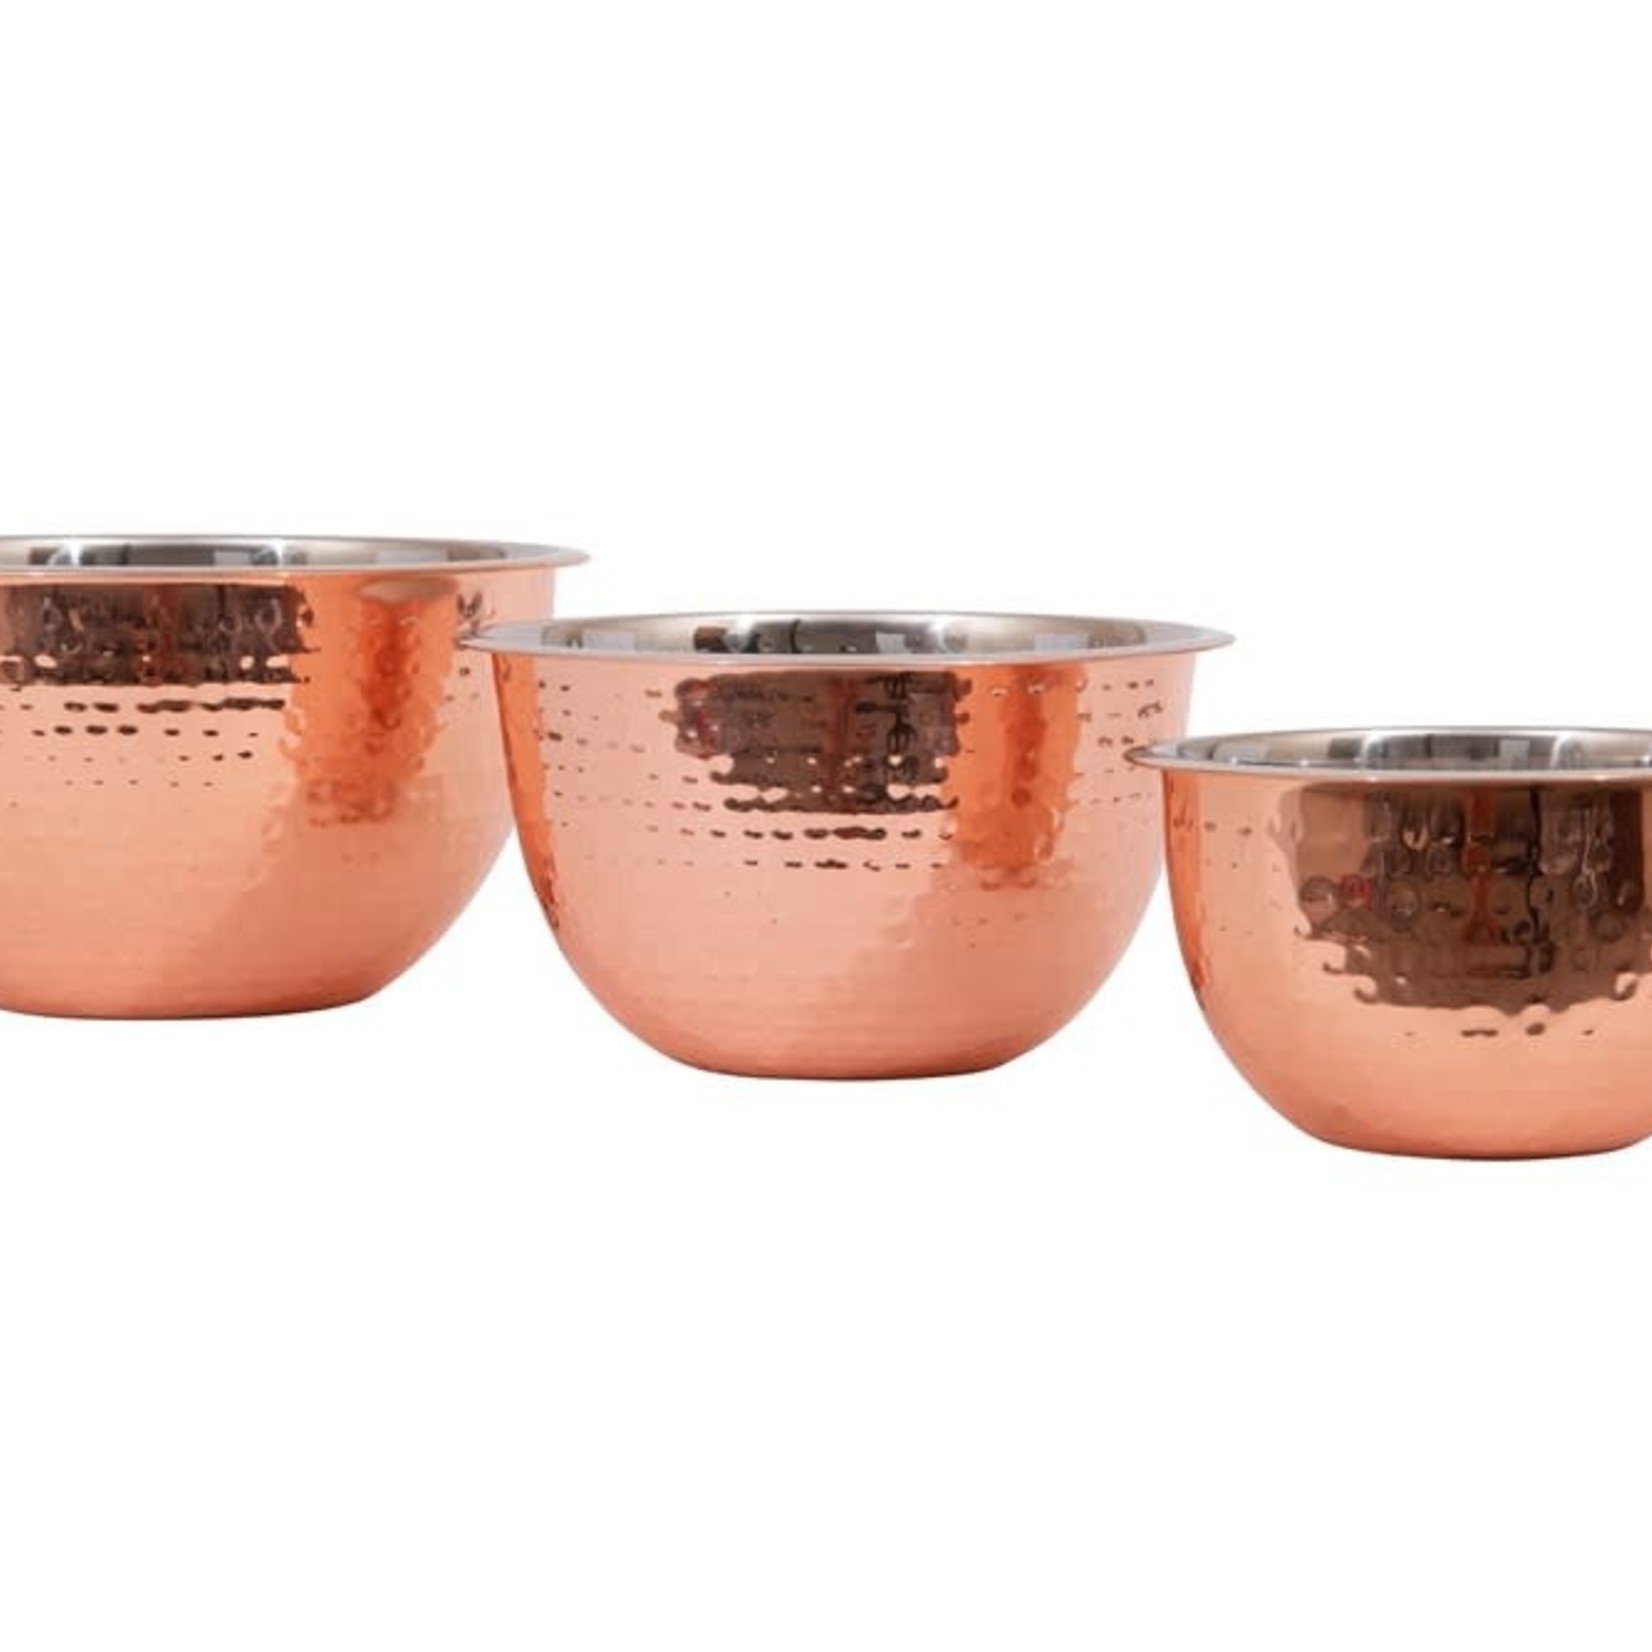 https://cdn.shoplightspeed.com/shops/621114/files/37324161/1652x1652x1/creative-co-op-copper-bowls-set-of-3.jpg